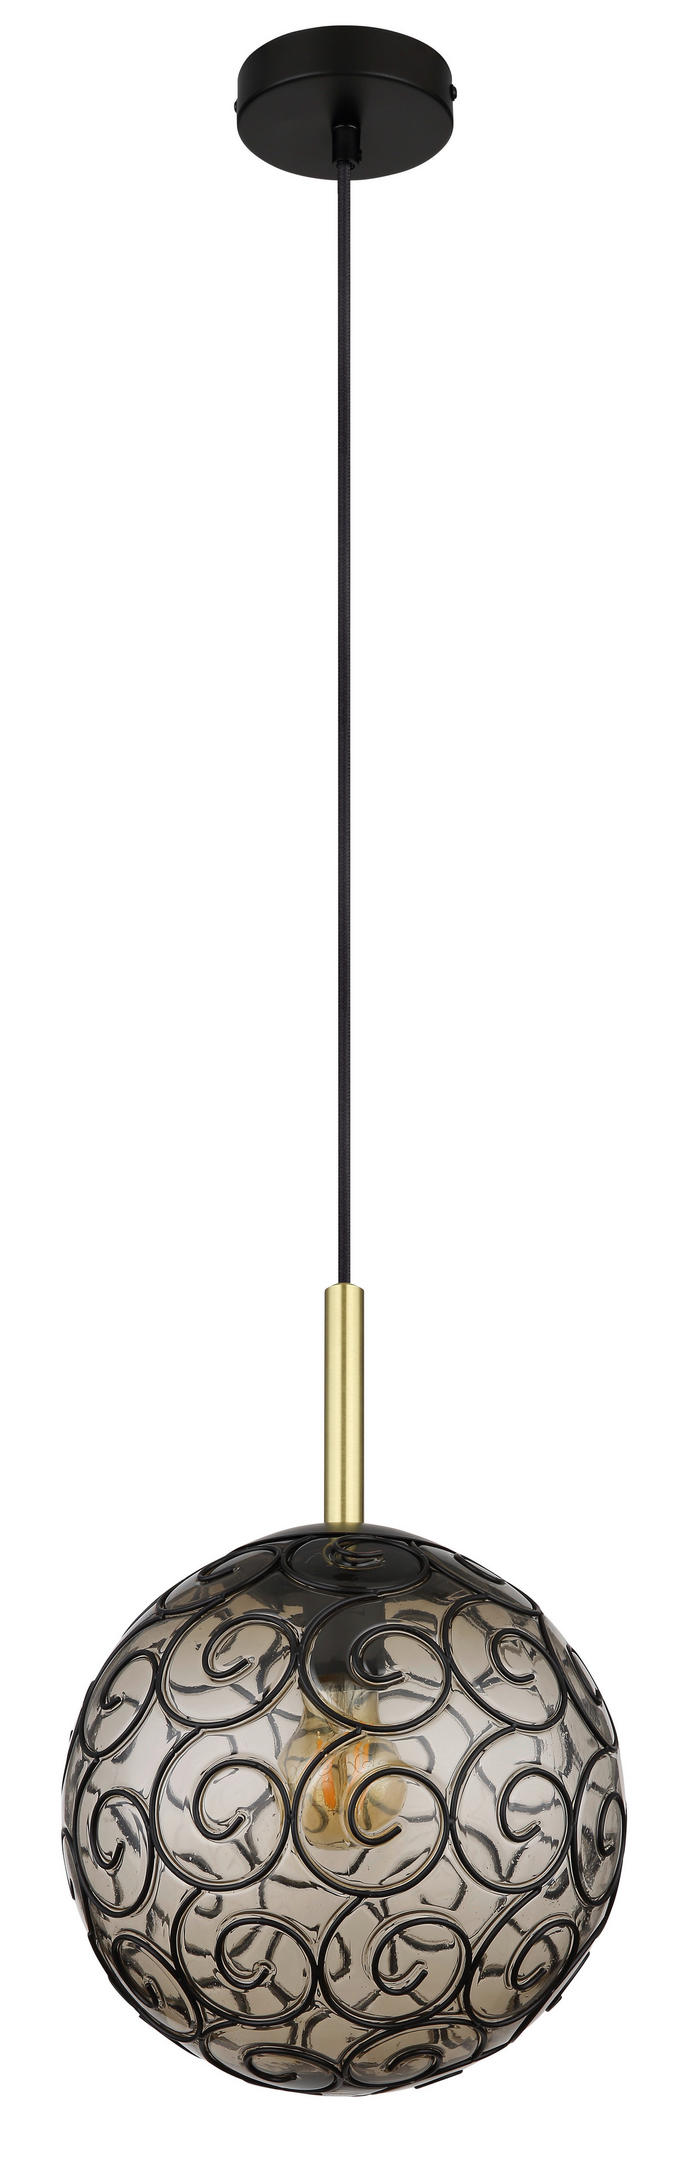 HÄNGELEUCHTE Maxi 25/120 cm   - Goldfarben/Schwarz, KONVENTIONELL, Kunststoff/Metall (25/120cm) - Globo